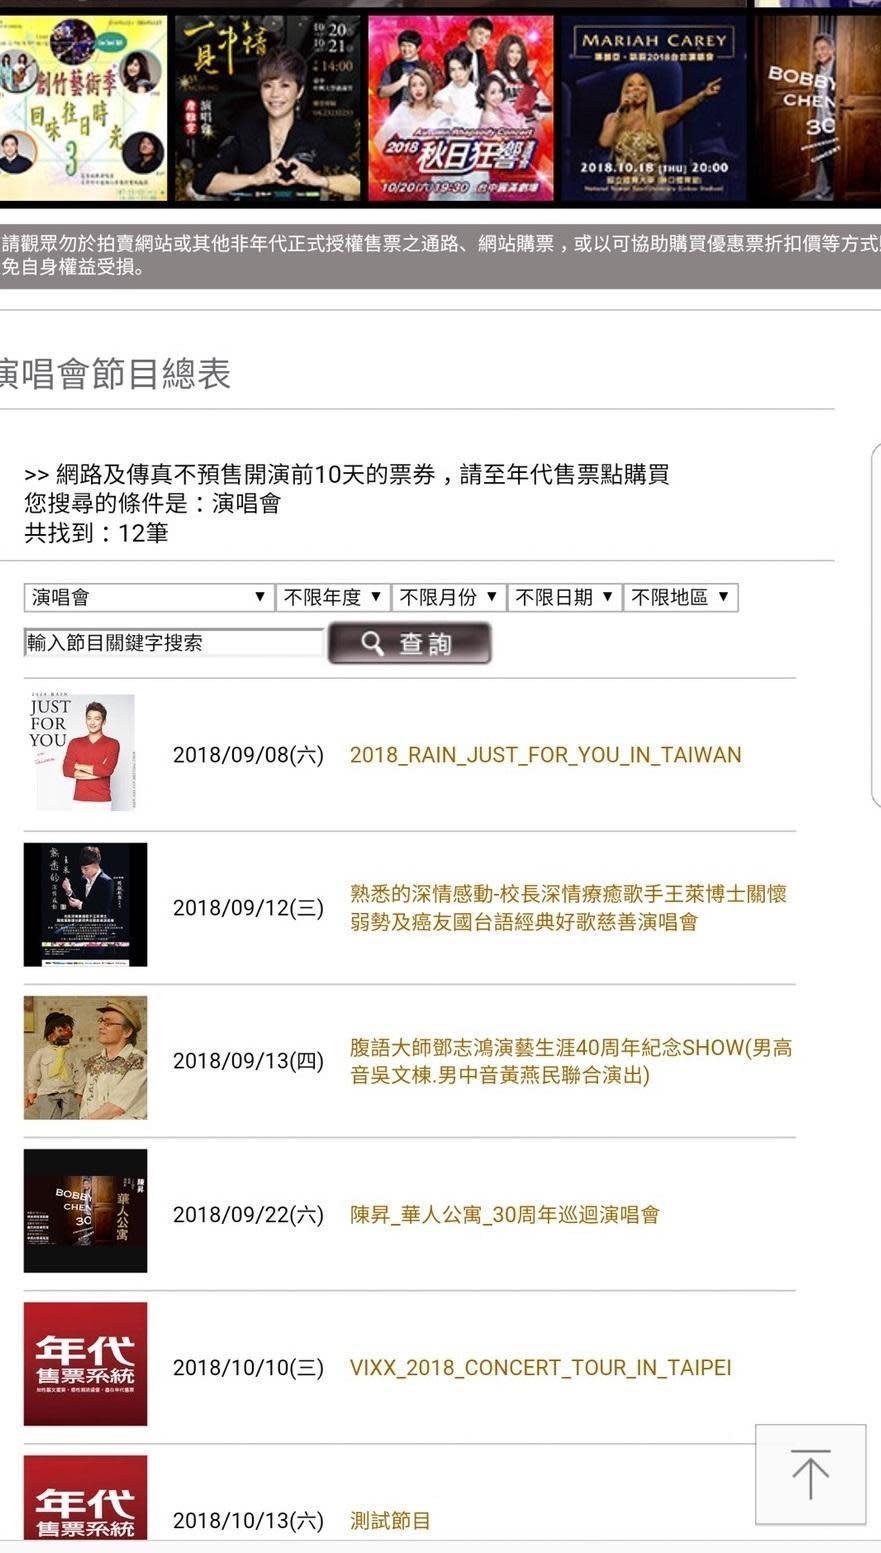 年代售票系統中，突然出現《VIXX 2018 CONCERT TOUR IN TAIPEI》10月10日舉辦演唱會的售票項目，引起韓方高度重視。（翻攝自年代售票系統官網）